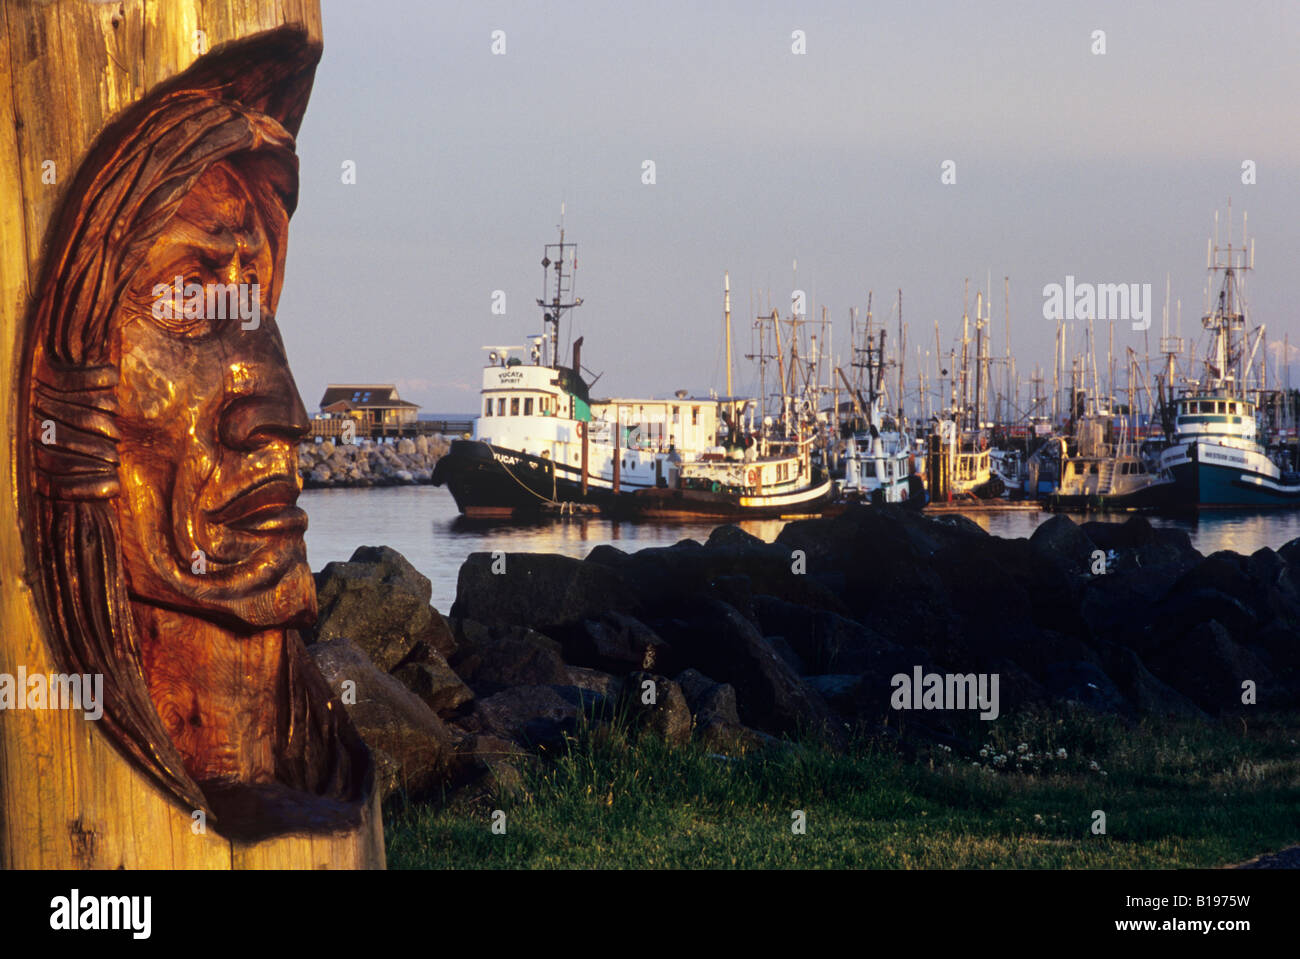 Native Gesicht geschnitzt in Holz-Block, Angeln Marina und Pier im Hintergrund, Campbell River, Vancouver Island, Britisch-Kolumbien, C Stockfoto